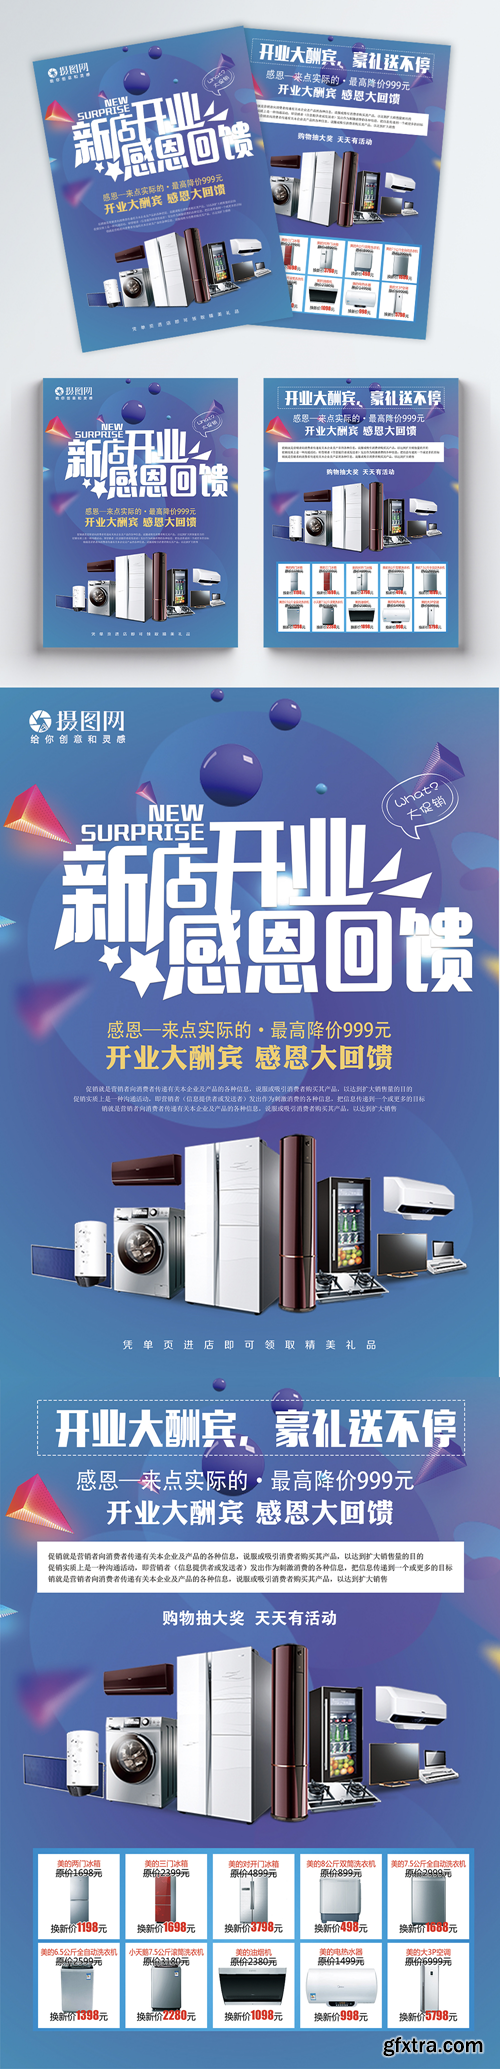 home appliances sales promotion flyer